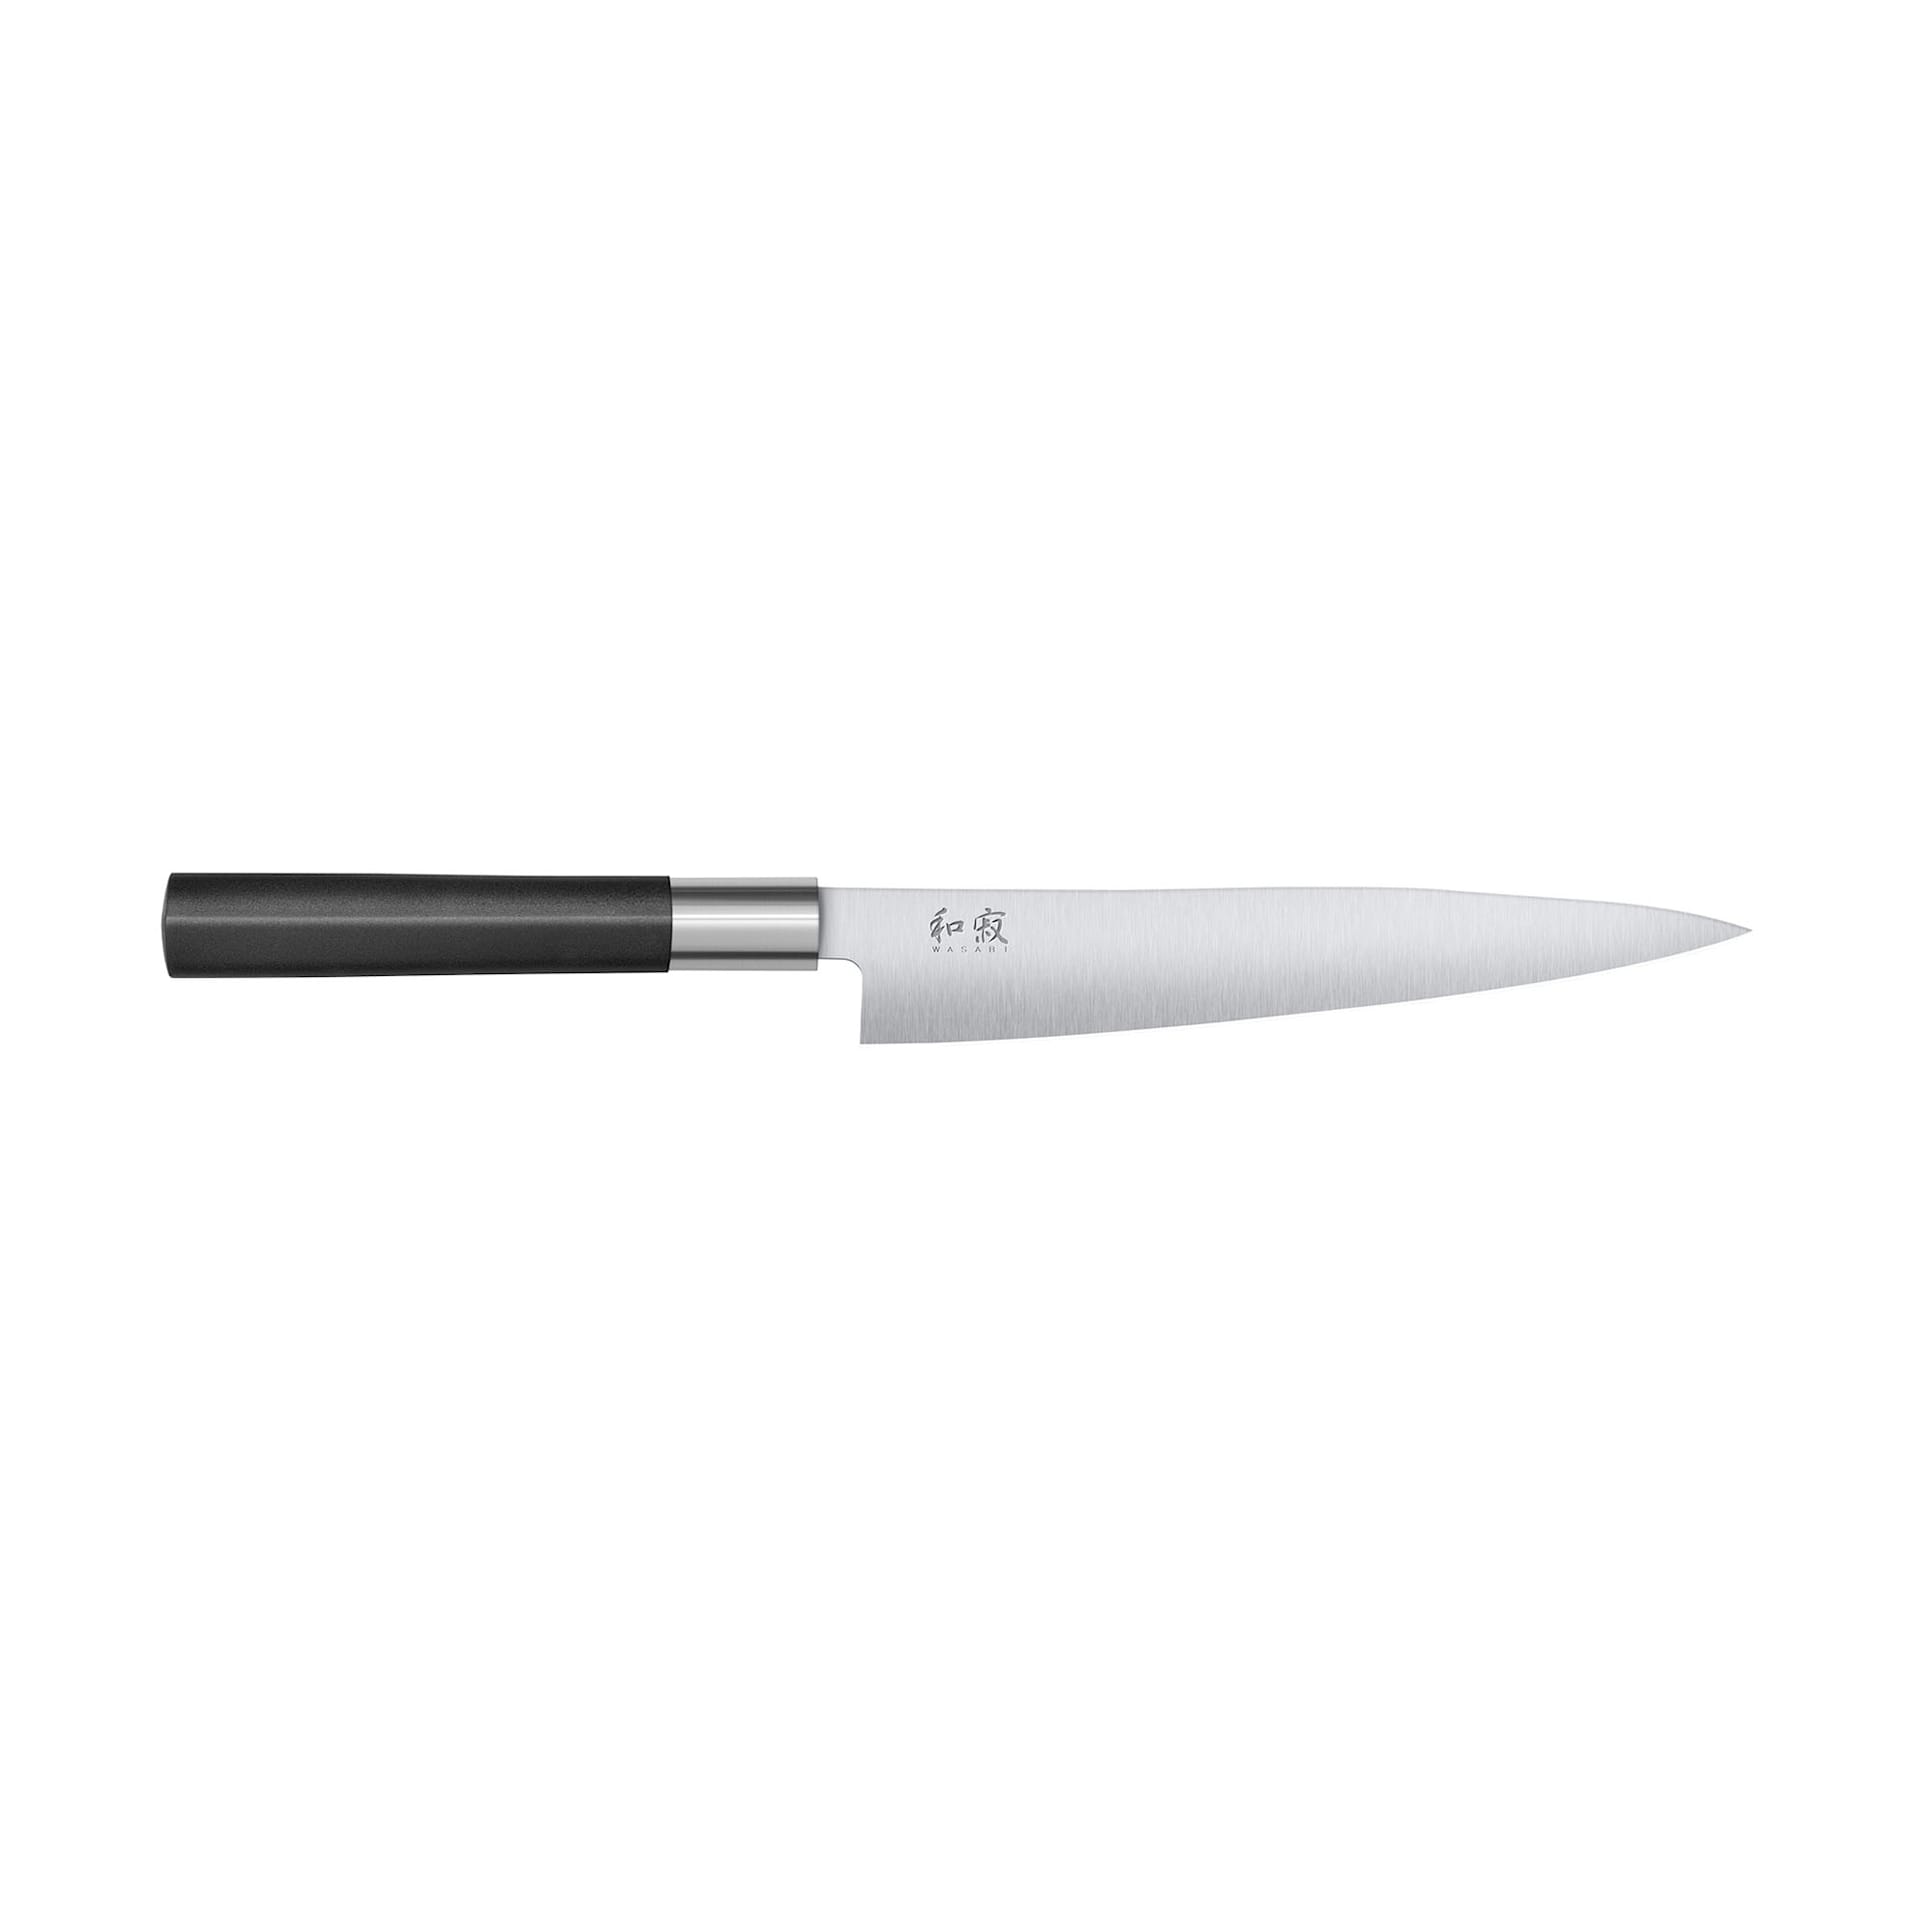 KAI WASABI Fillet knife Flexible 18 cm - KAI - NO GA